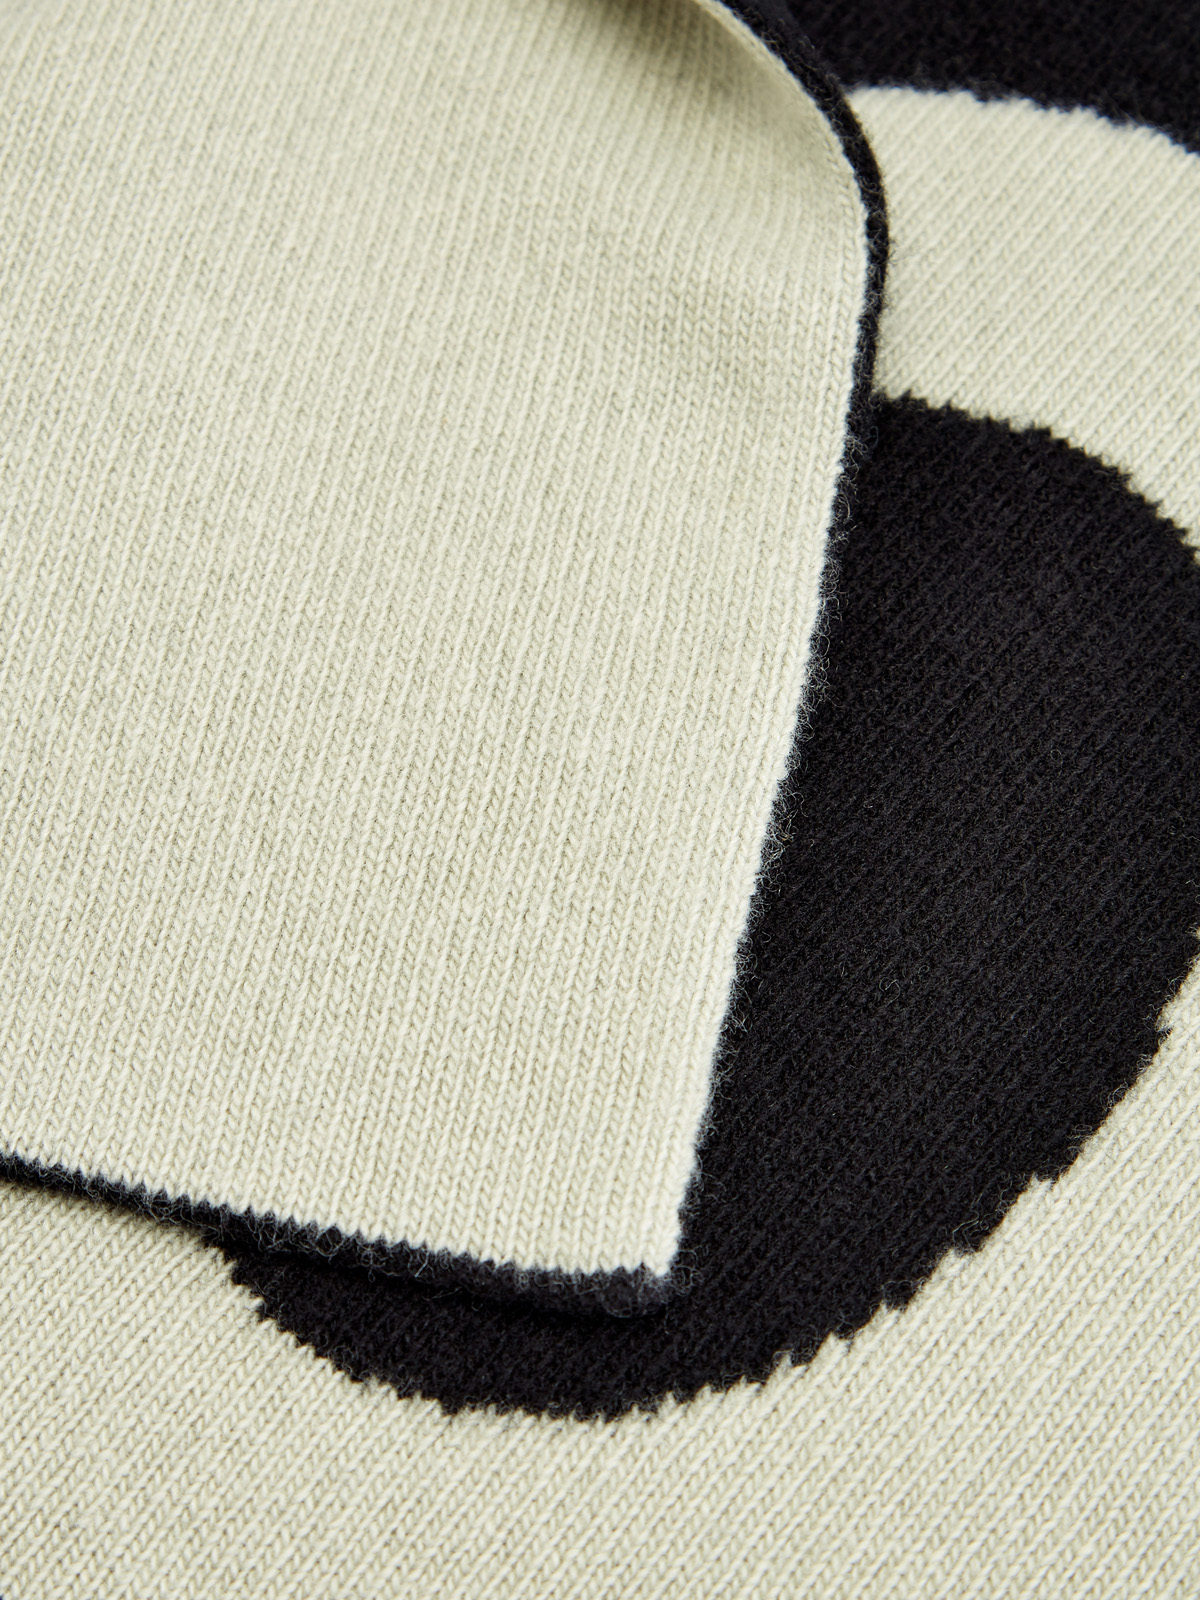 Шерстяной шарф с макро-принтом в технике интарсии OFF-WHITE, цвет черно-белый, размер 36;36.5;37.5;38;38.5;39;40 - фото 2